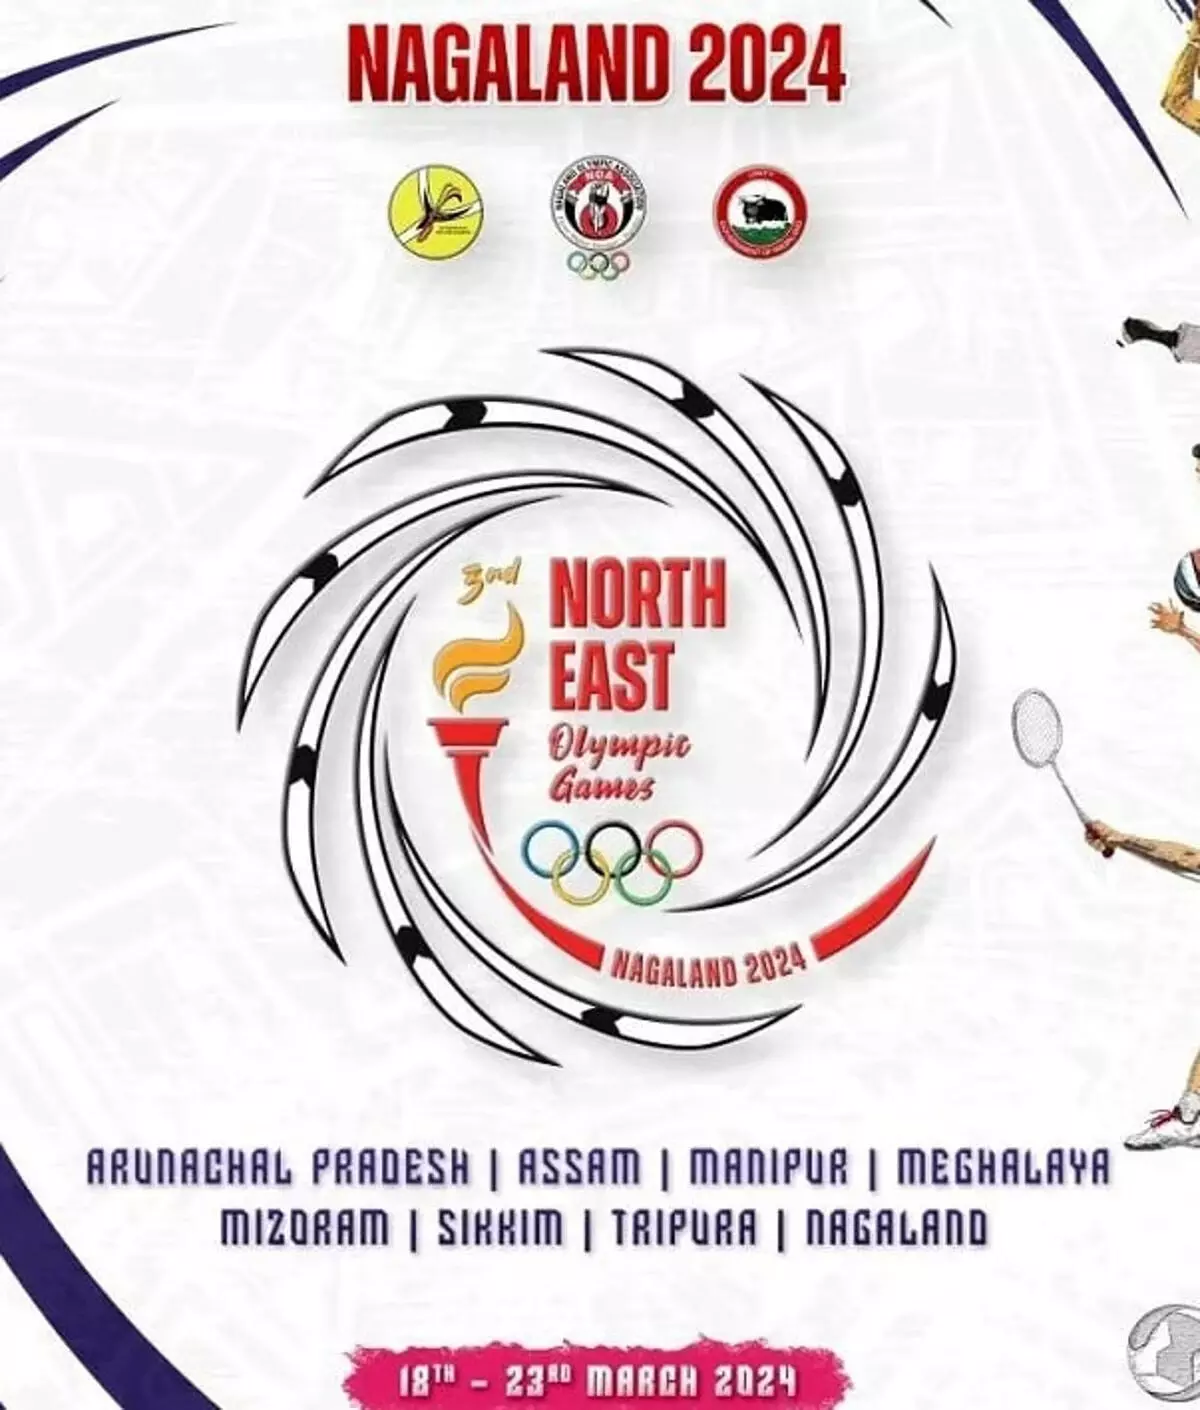 मणिपुर ने तीसरे उत्तर पूर्व खेलों में 68 पदकों के साथ दबदबा बनाया